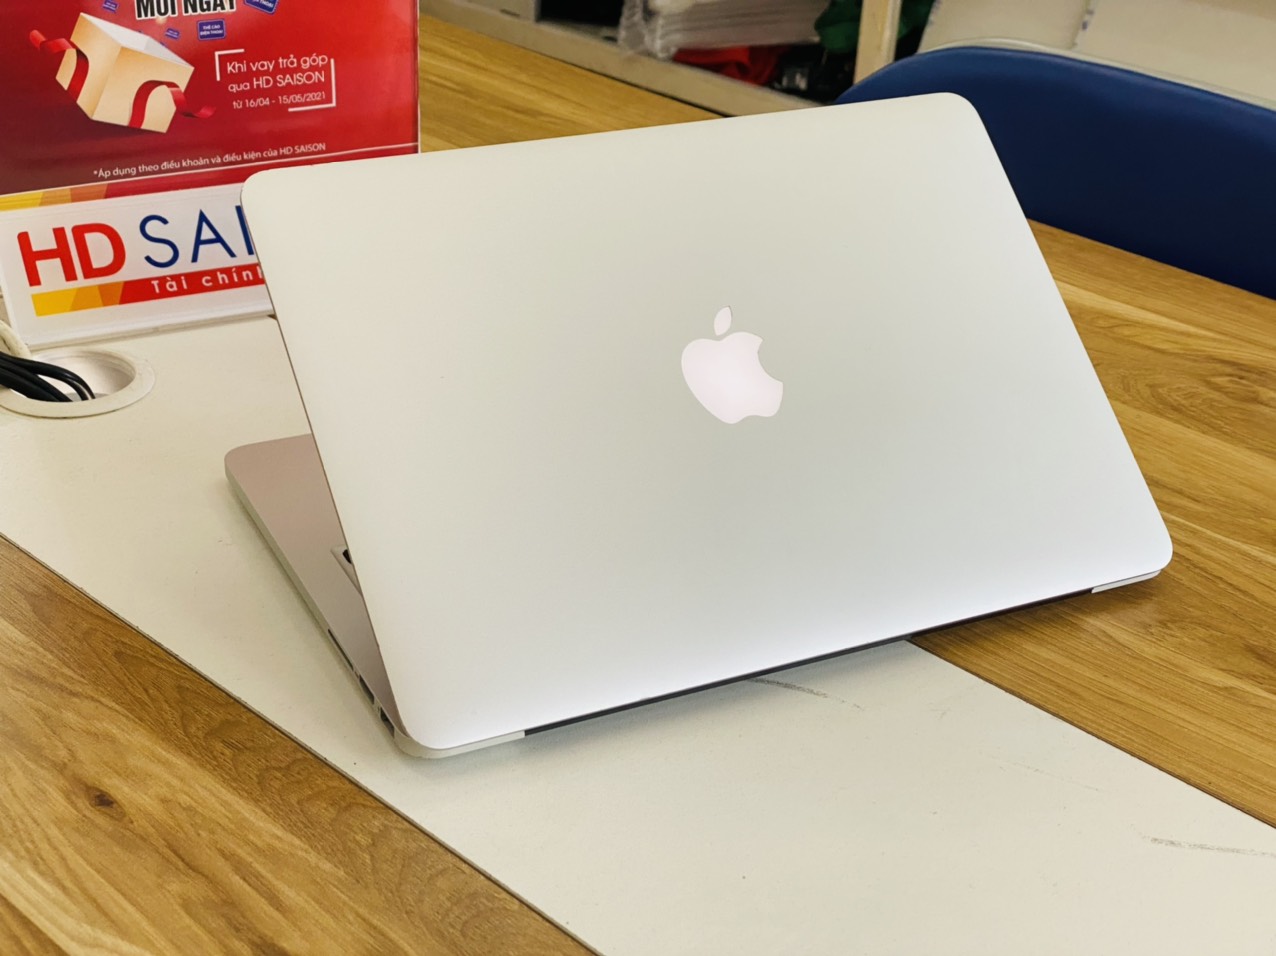 Macbook Pro 13-inch 2015